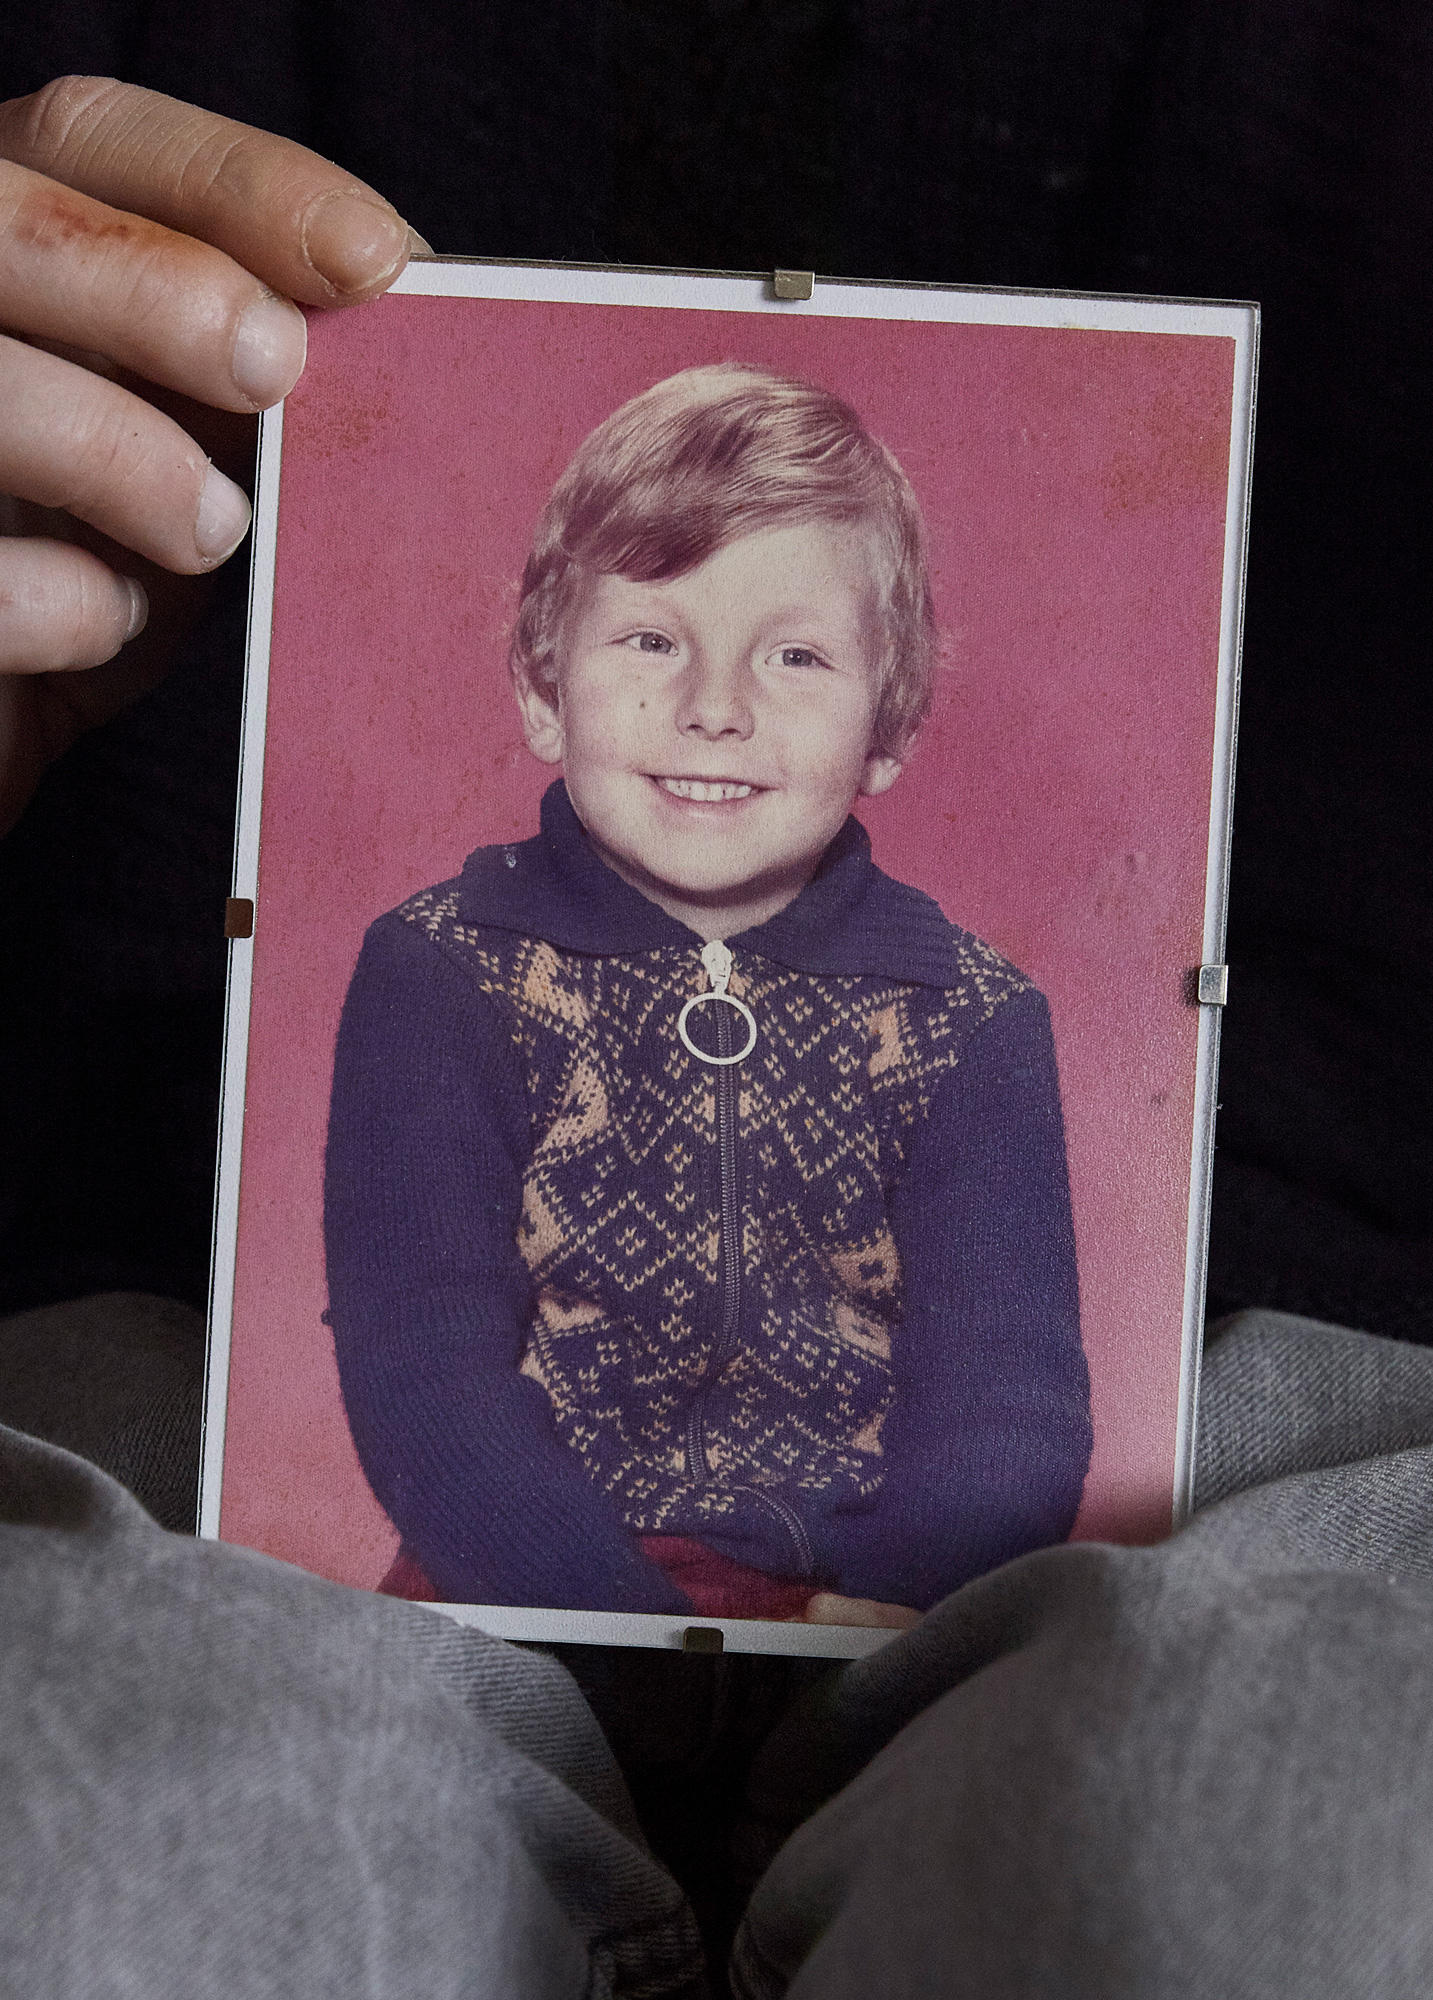 Fotografie von einem Jungen mit Strickjacke aus den 70er Jahren, in einem Glasrahmen